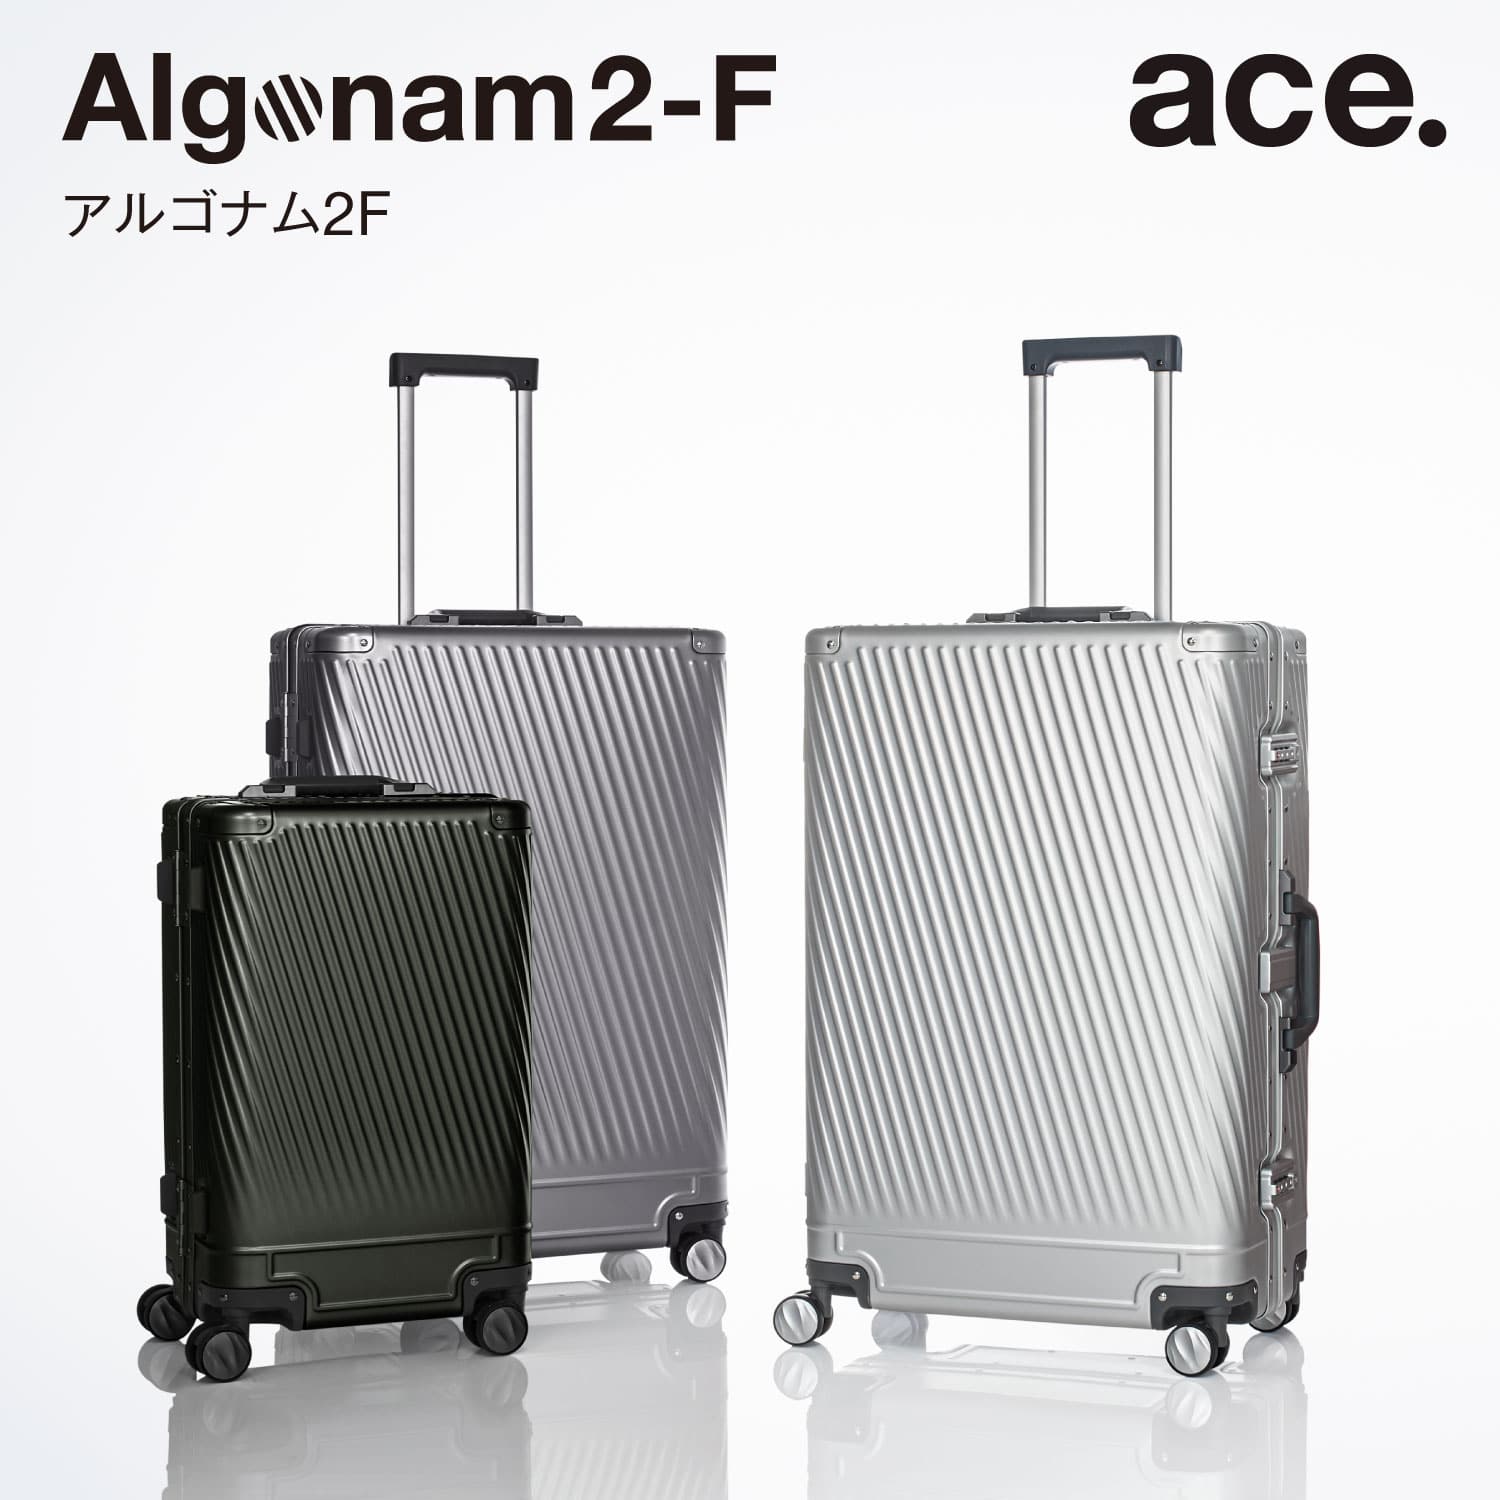 ace. Algonam-F アルゴナムF) アルミニウムボディを採用し、斜めリブのフェードアウトデザインと走行性に優れた双輪キャスターを備えたフレームタイプのハードサイドゲージ。